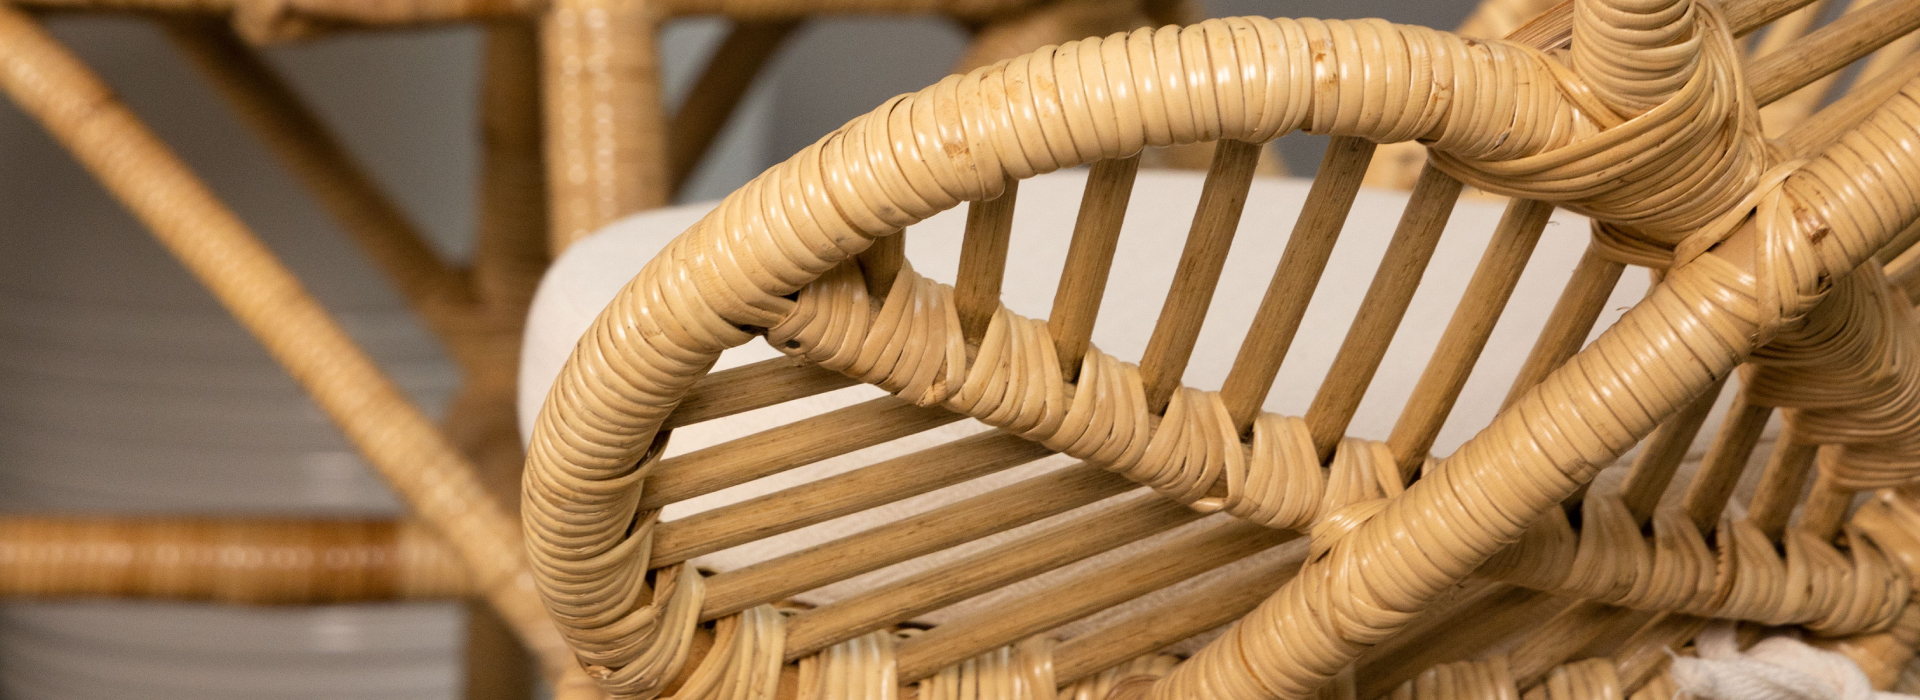 Zbliżenie na bok plecionego fotela wykonanego w całości z naturalnego rattanu.